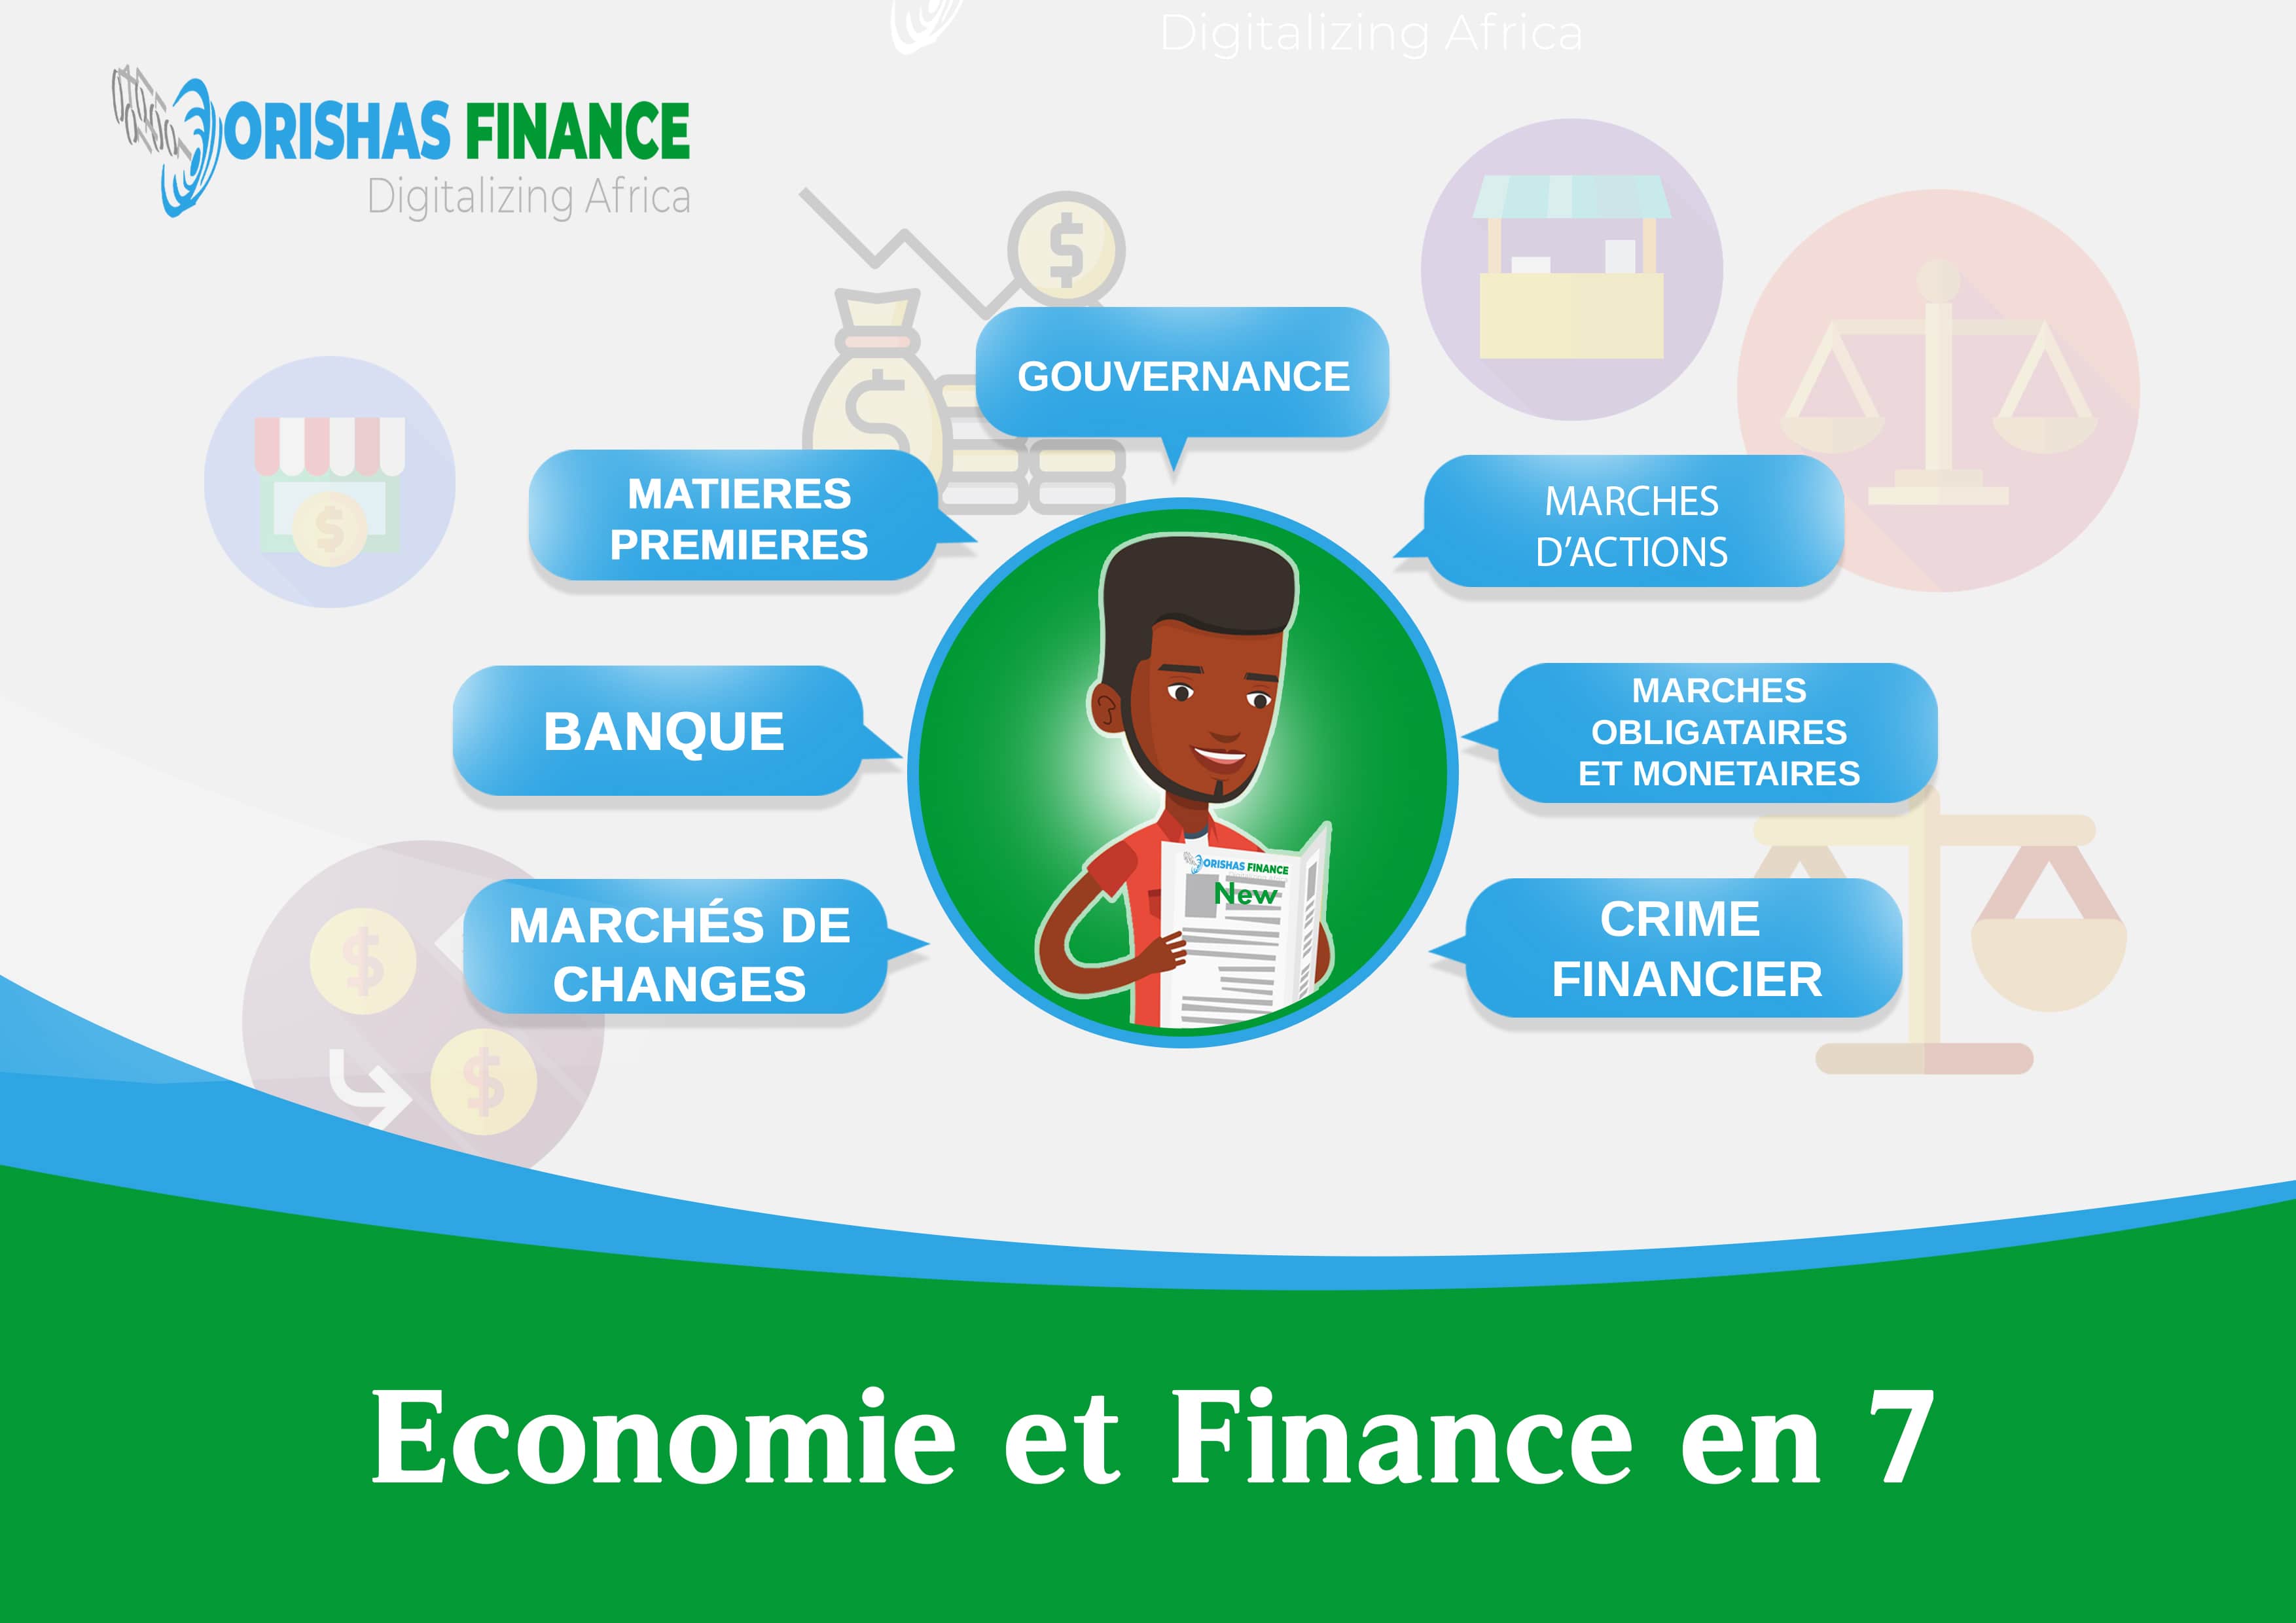  Economie et finance en 7 du 15 au 19 Mars 2021 